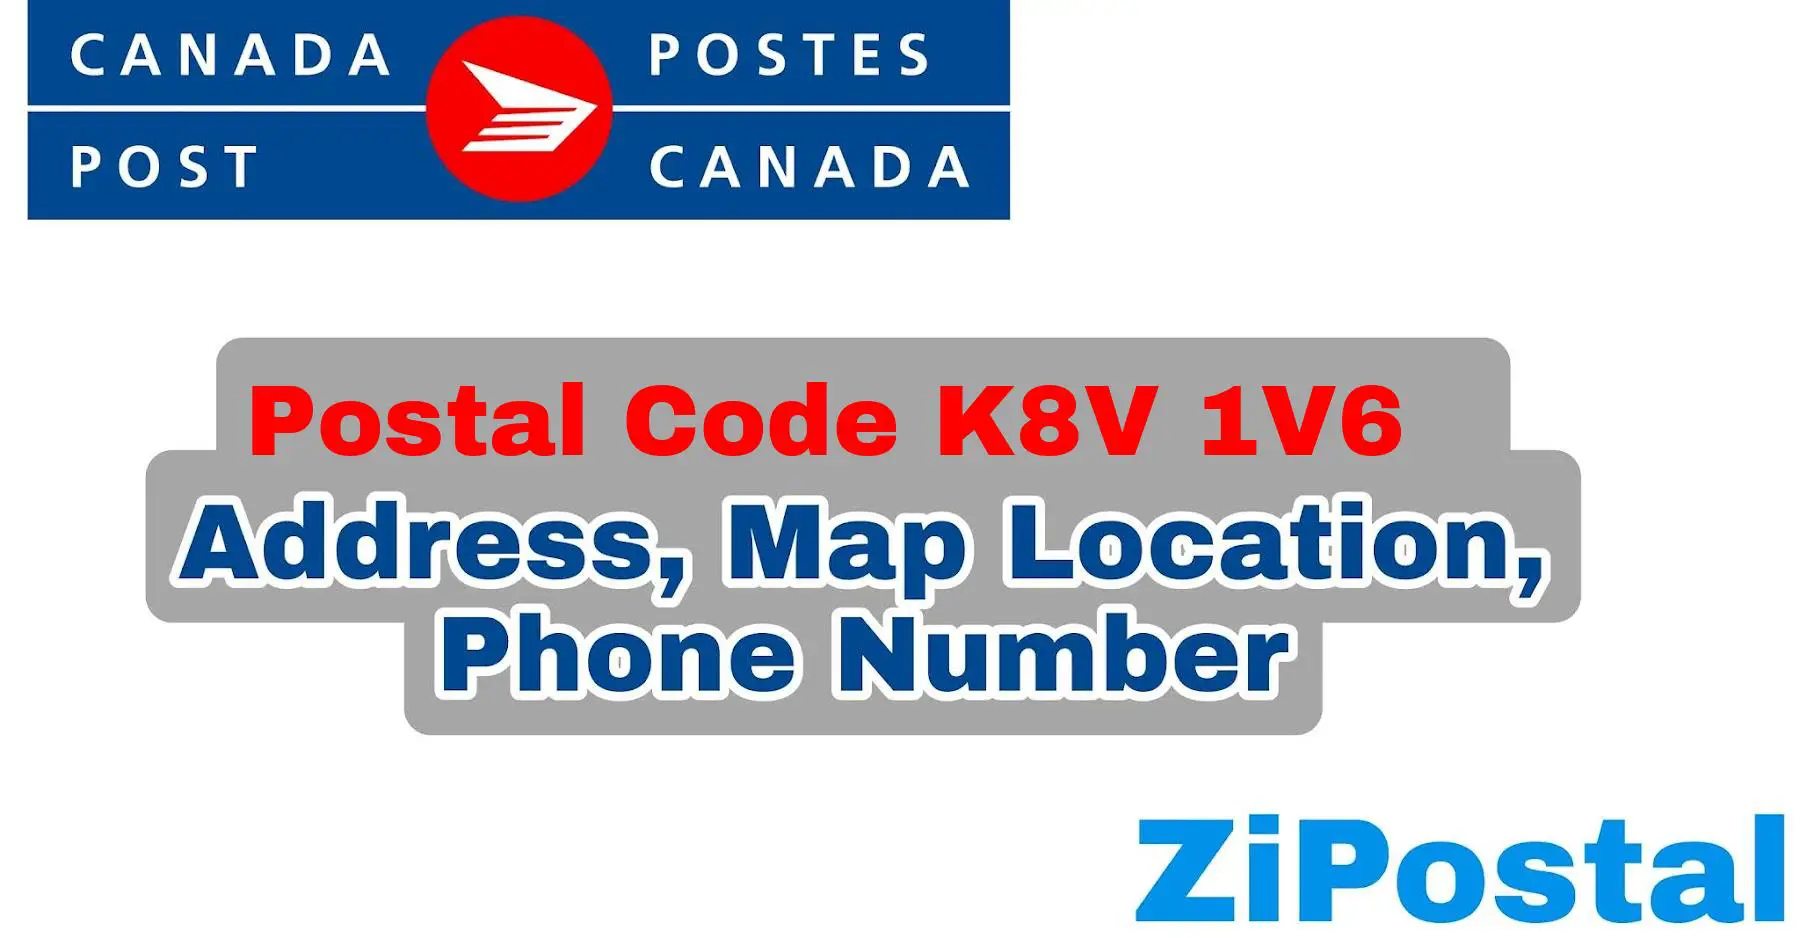 Postal Code K8V 1V6 Address Map Location and Phone Number